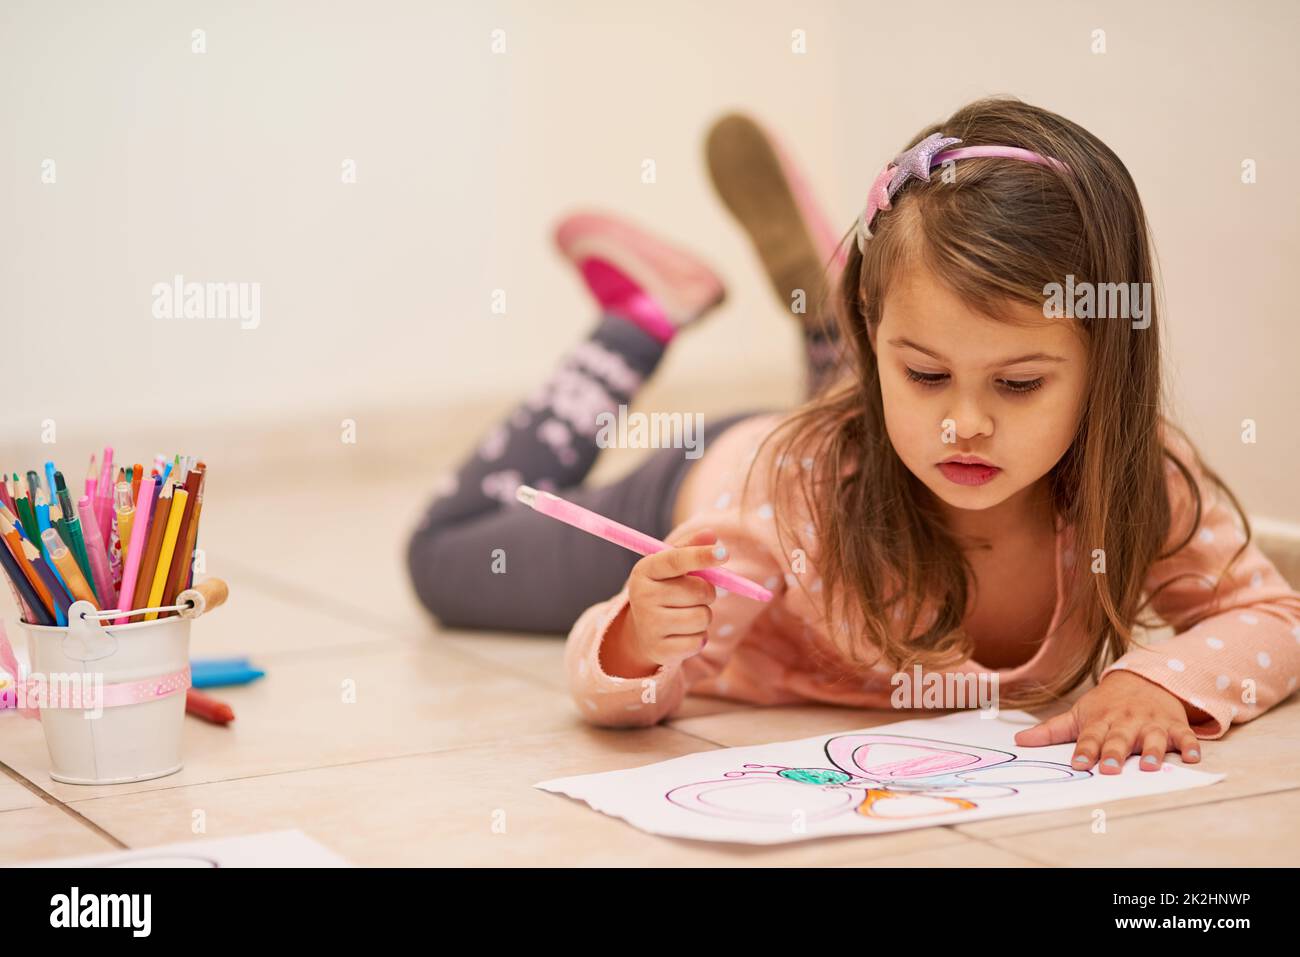 Se sentir à l'aise pour faire preuve de créativité. Photo d'une petite fille colorant dans une photo à la maison. Banque D'Images